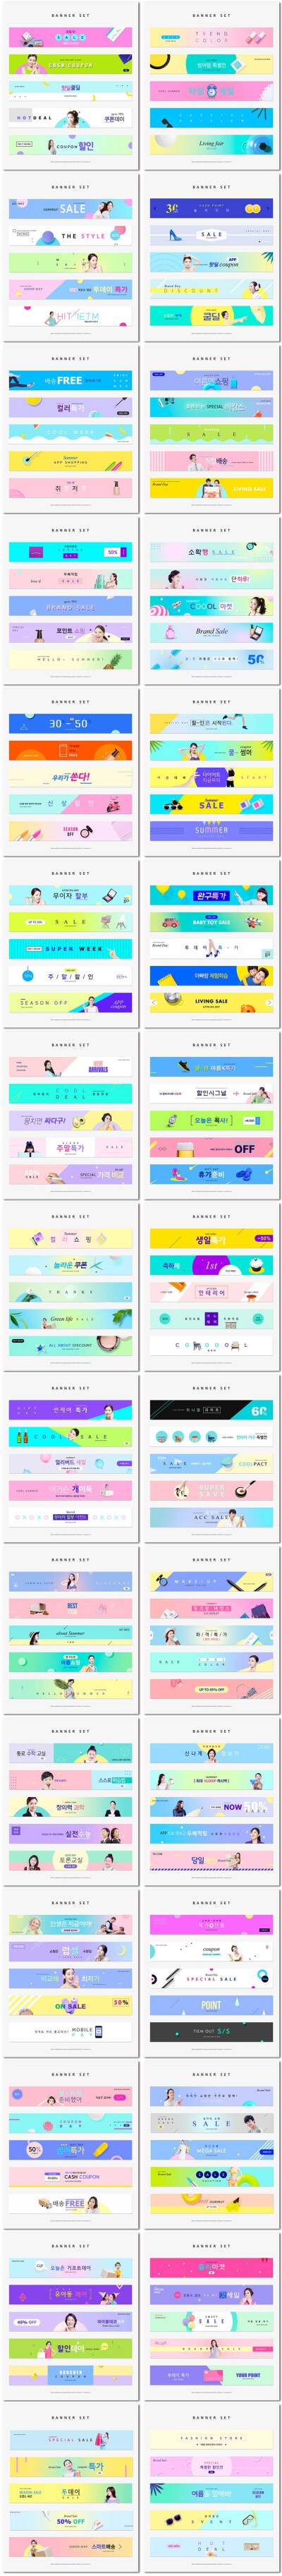 韩国电商广告促销活动横幅流行色彩banner海报psd模板素材设计